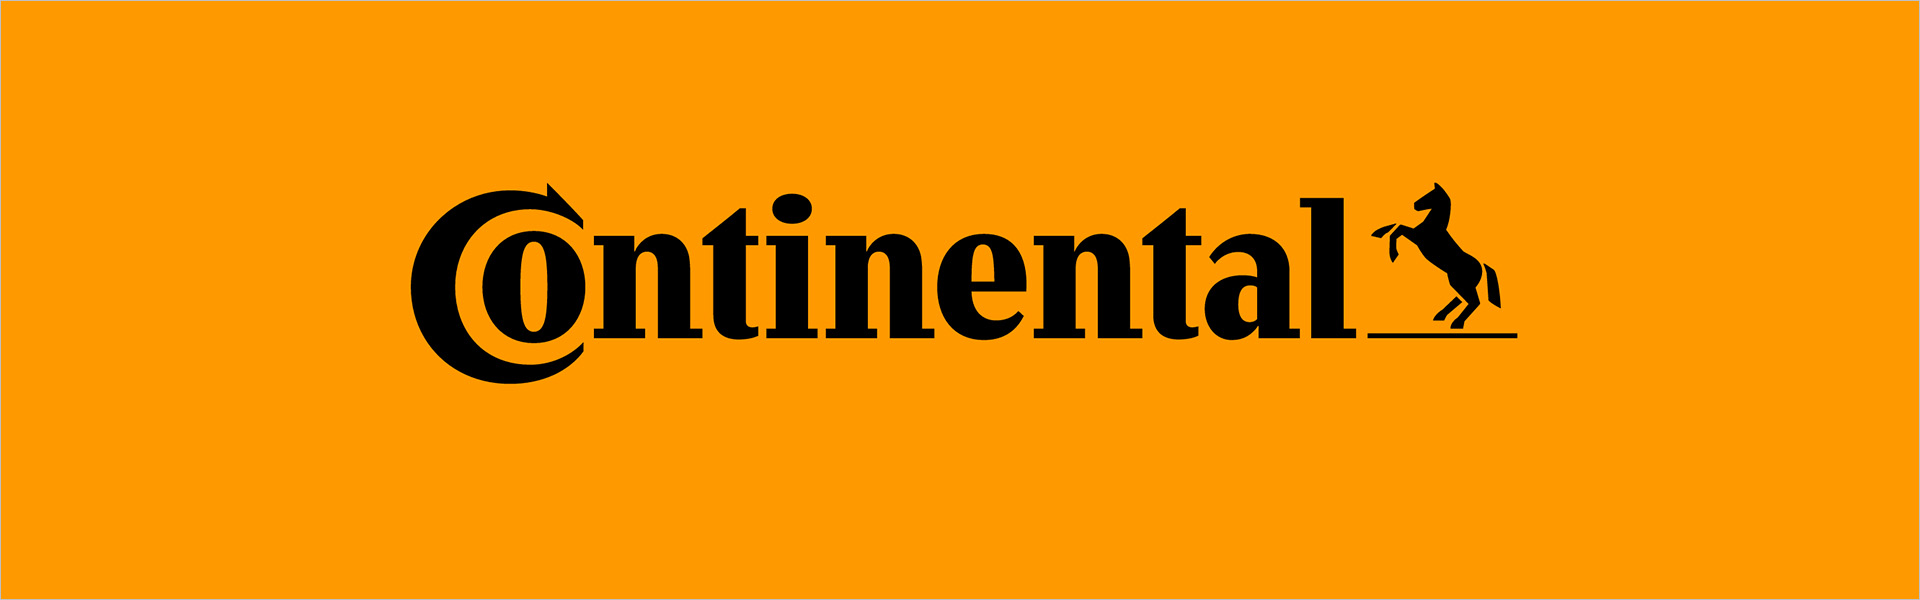 Continental ContiSportContact 5 245/40R18 93 Y AO Continental